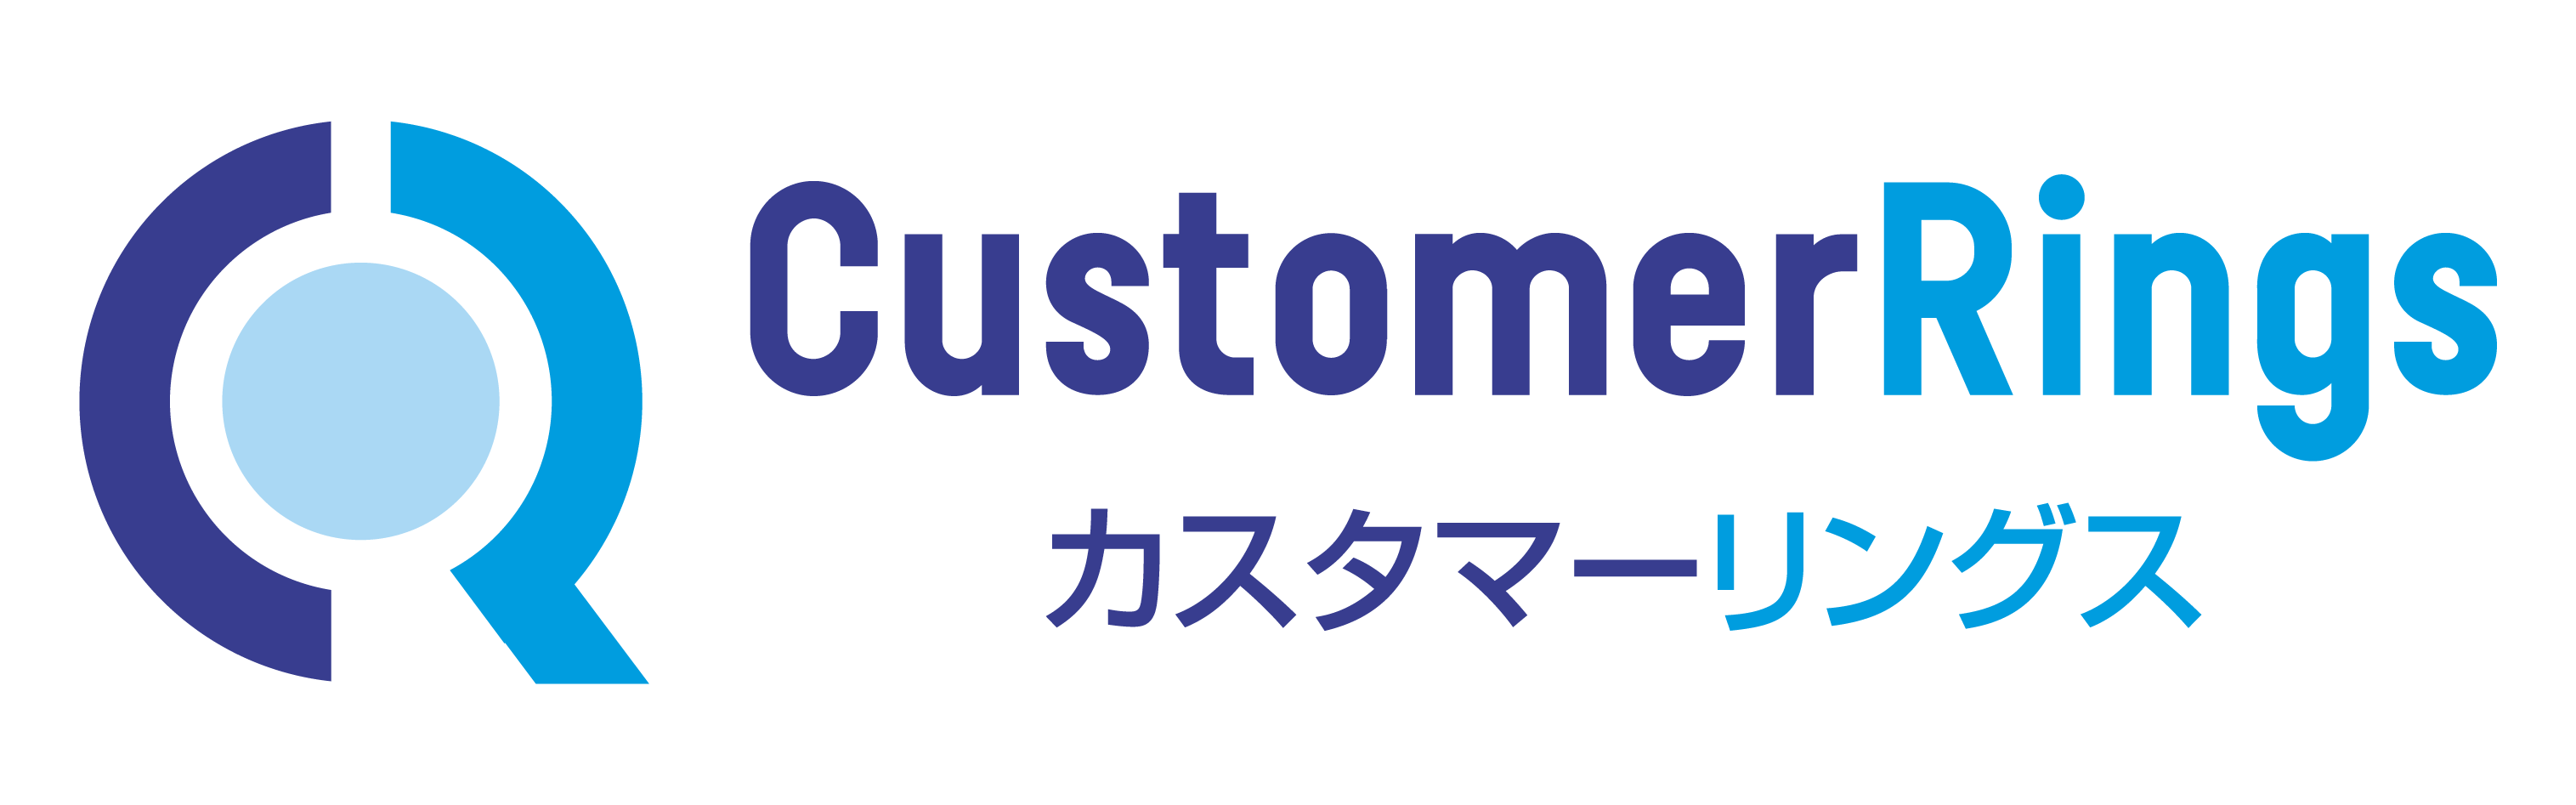 株式会社プラスアルファ・コンサルティング CustomerRings logo